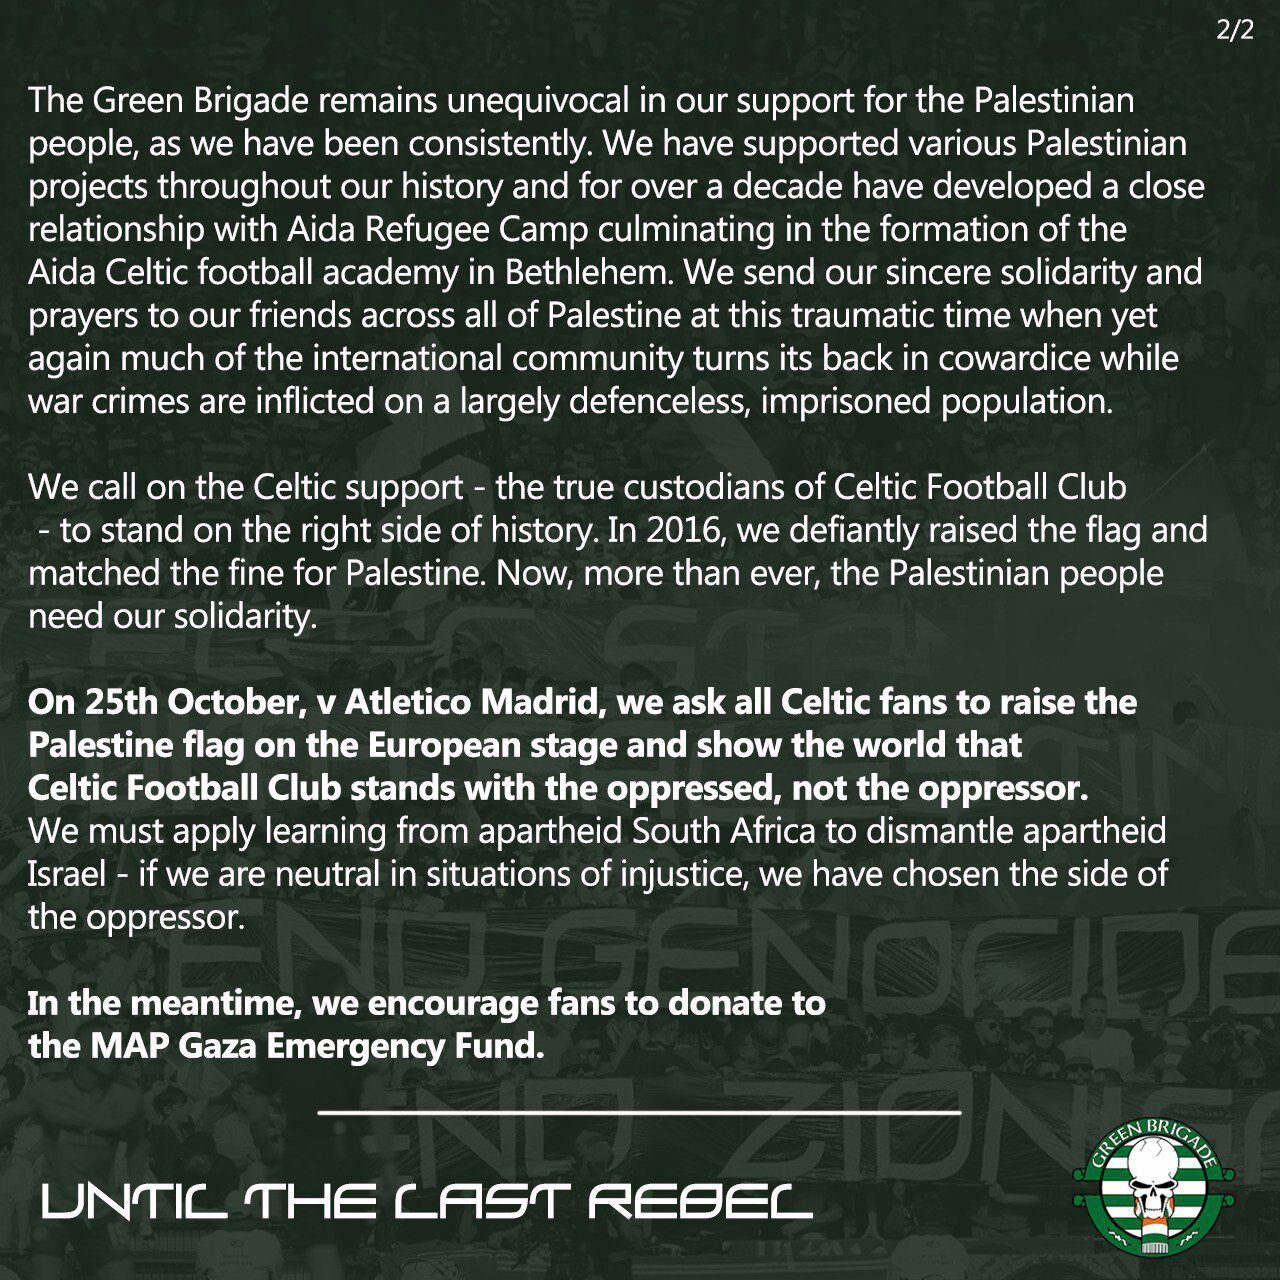 بیانیه تاریخی هواداران تیم فوتبال سلتیک در حمایت از مردم فلسطین